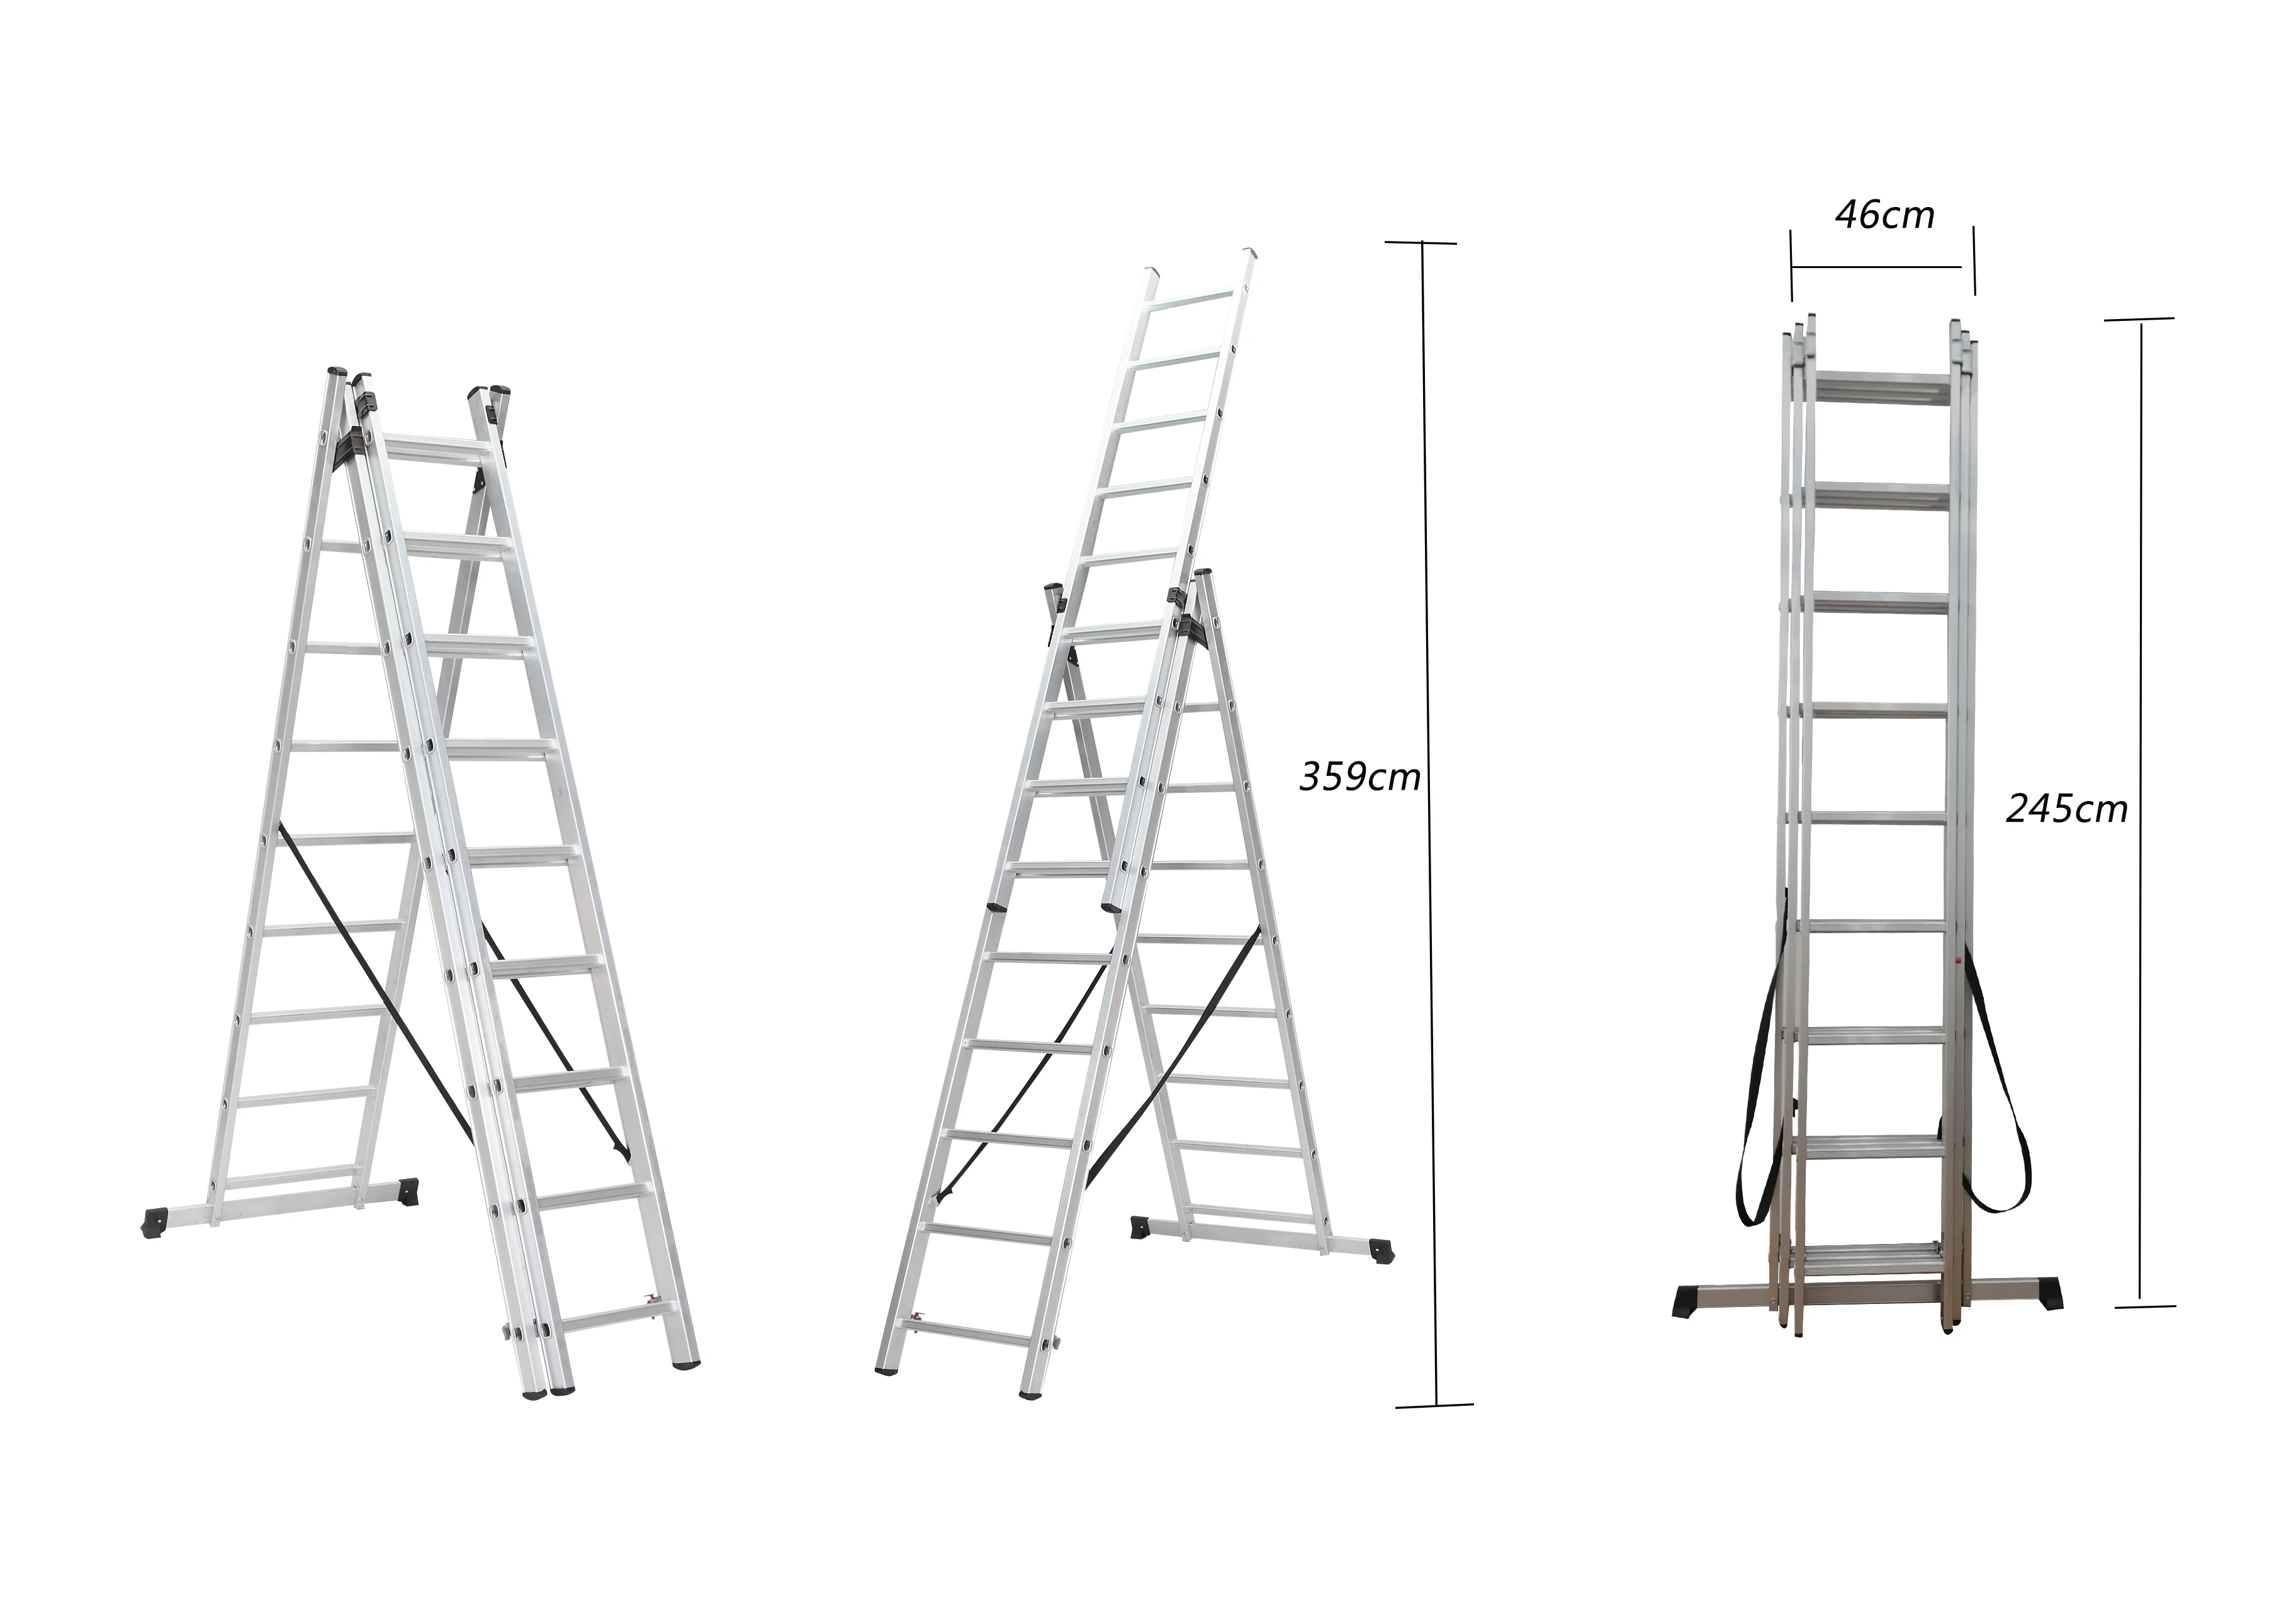 effectief Overeenkomstig met Retentie 3x9 Step Indoor And Outdoor Extension Aluminum Ladder Multipurpose Gs - Buy  Aluminum Ladder,Step Ladder,Ladder Multipurpose Product on Alibaba.com